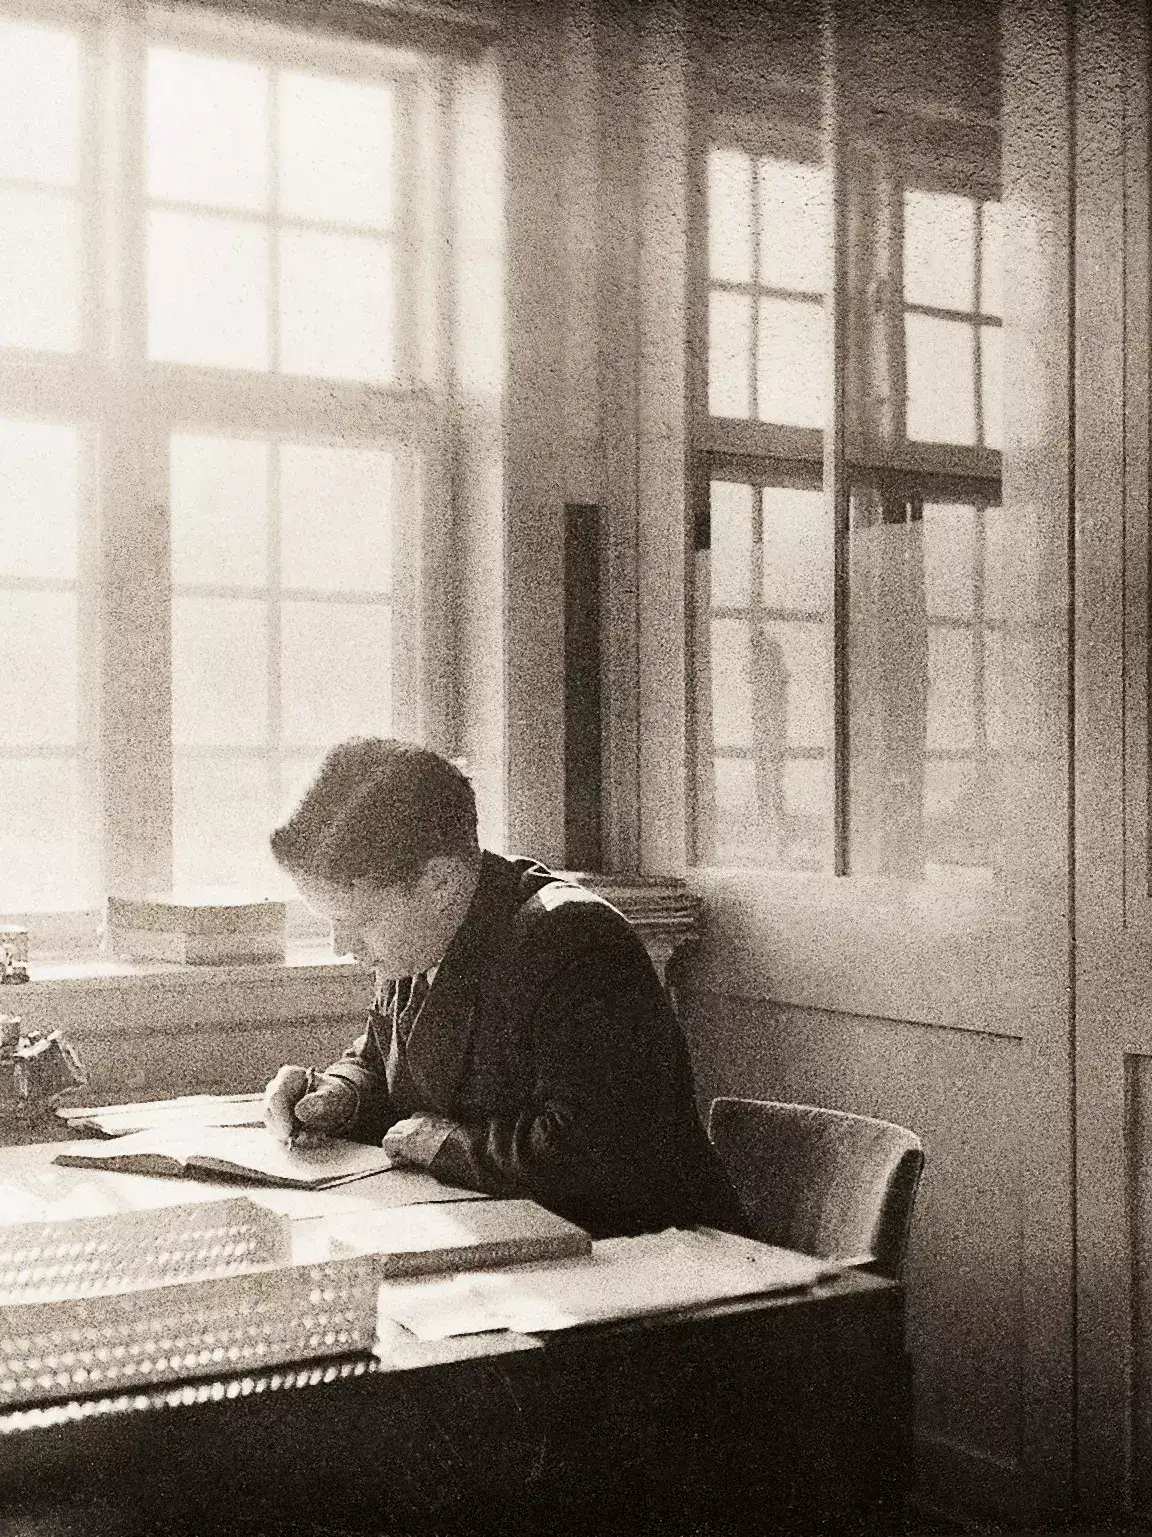 Schwarz-Weiß-Bild einer Person, die konzentriert an einem Schreibtisch nahe großer Fenster studiert.